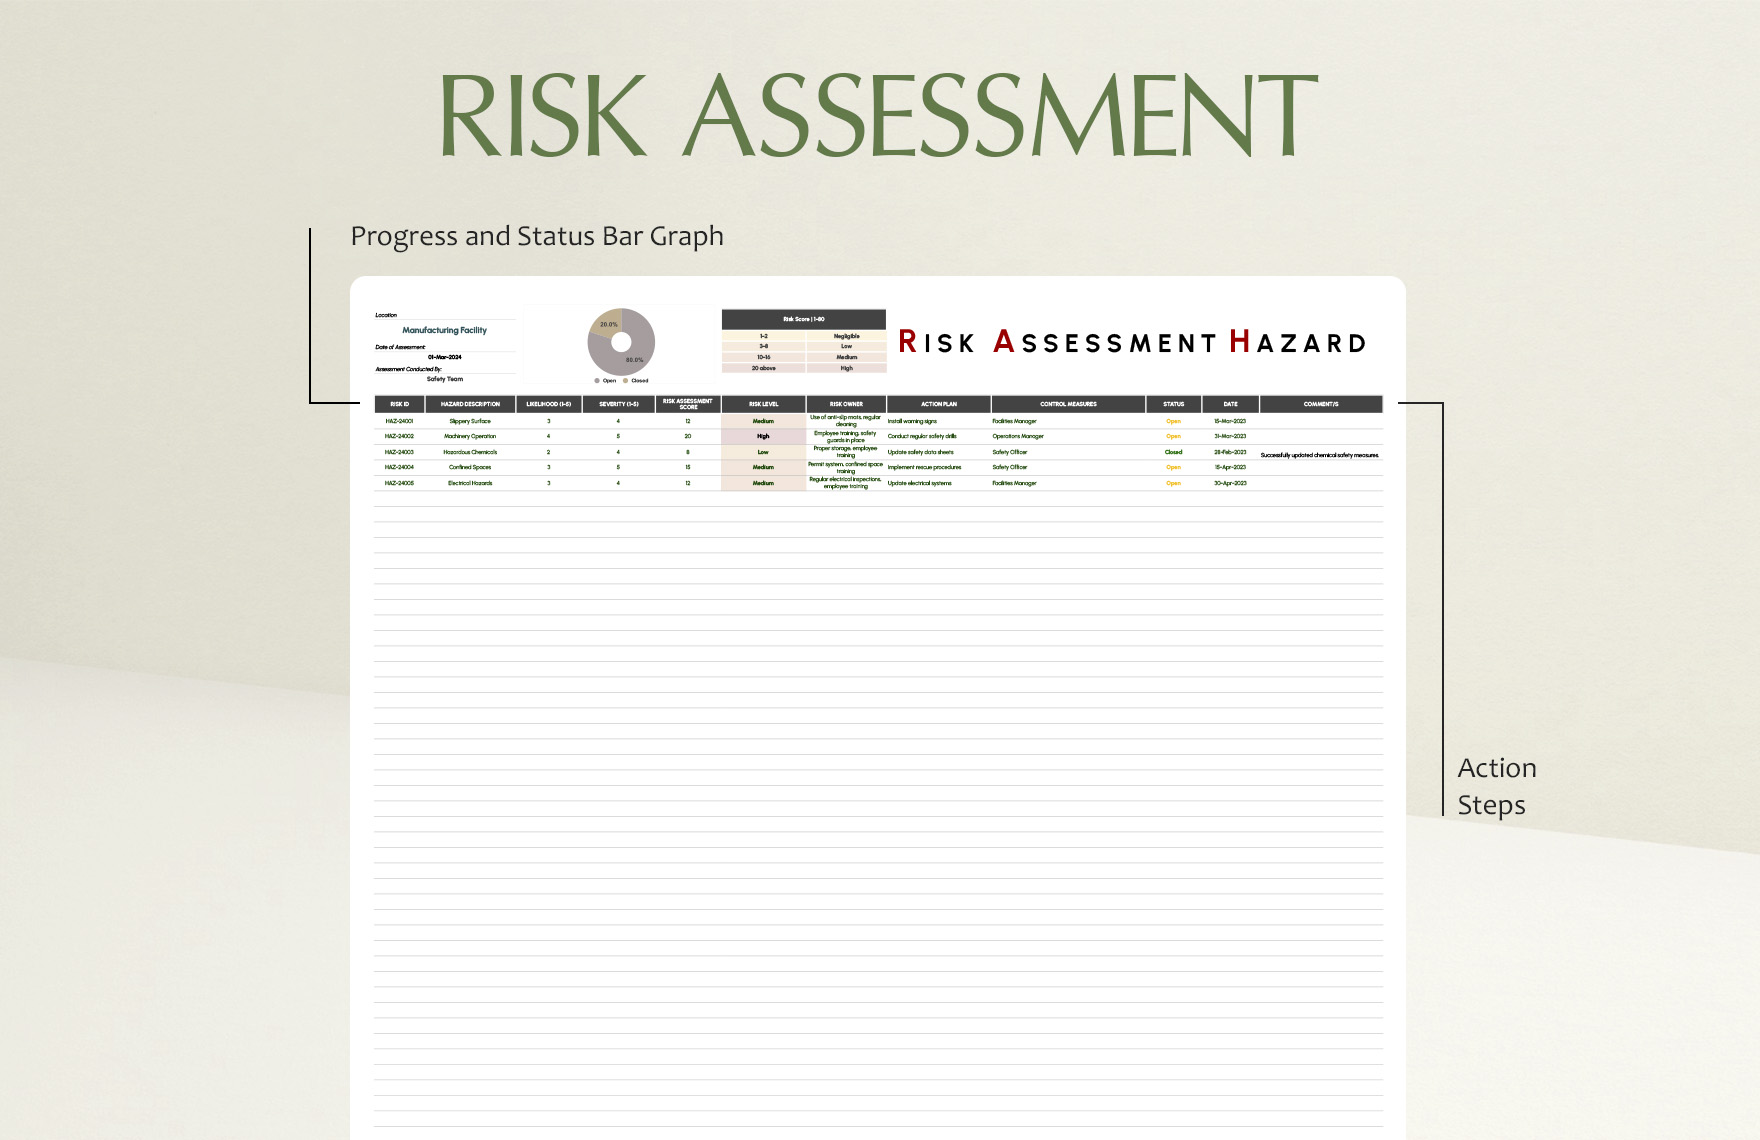 Risk Assessment Hazard Template